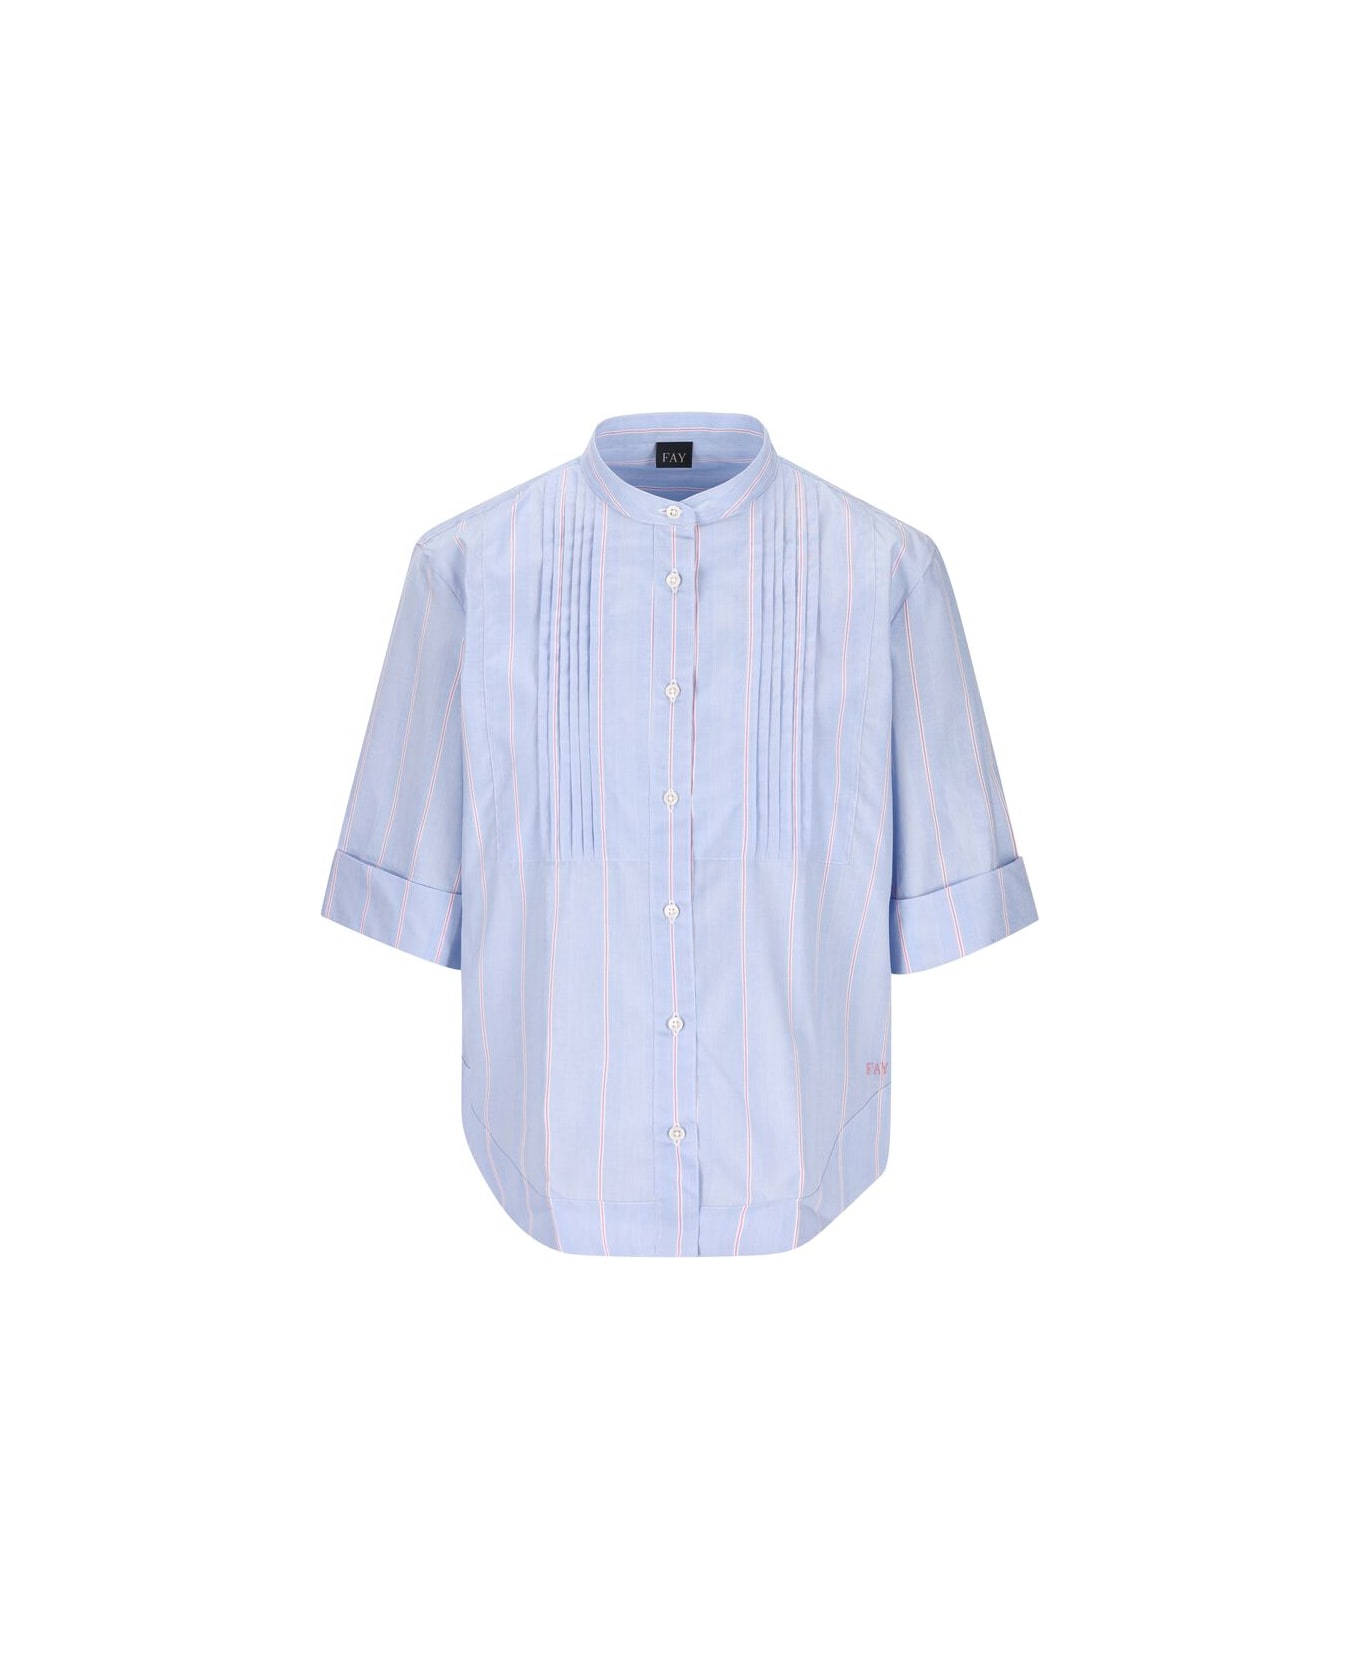 Fay Poepelin Shirt With Mandarin Collar - Azzurro/rosa シャツ